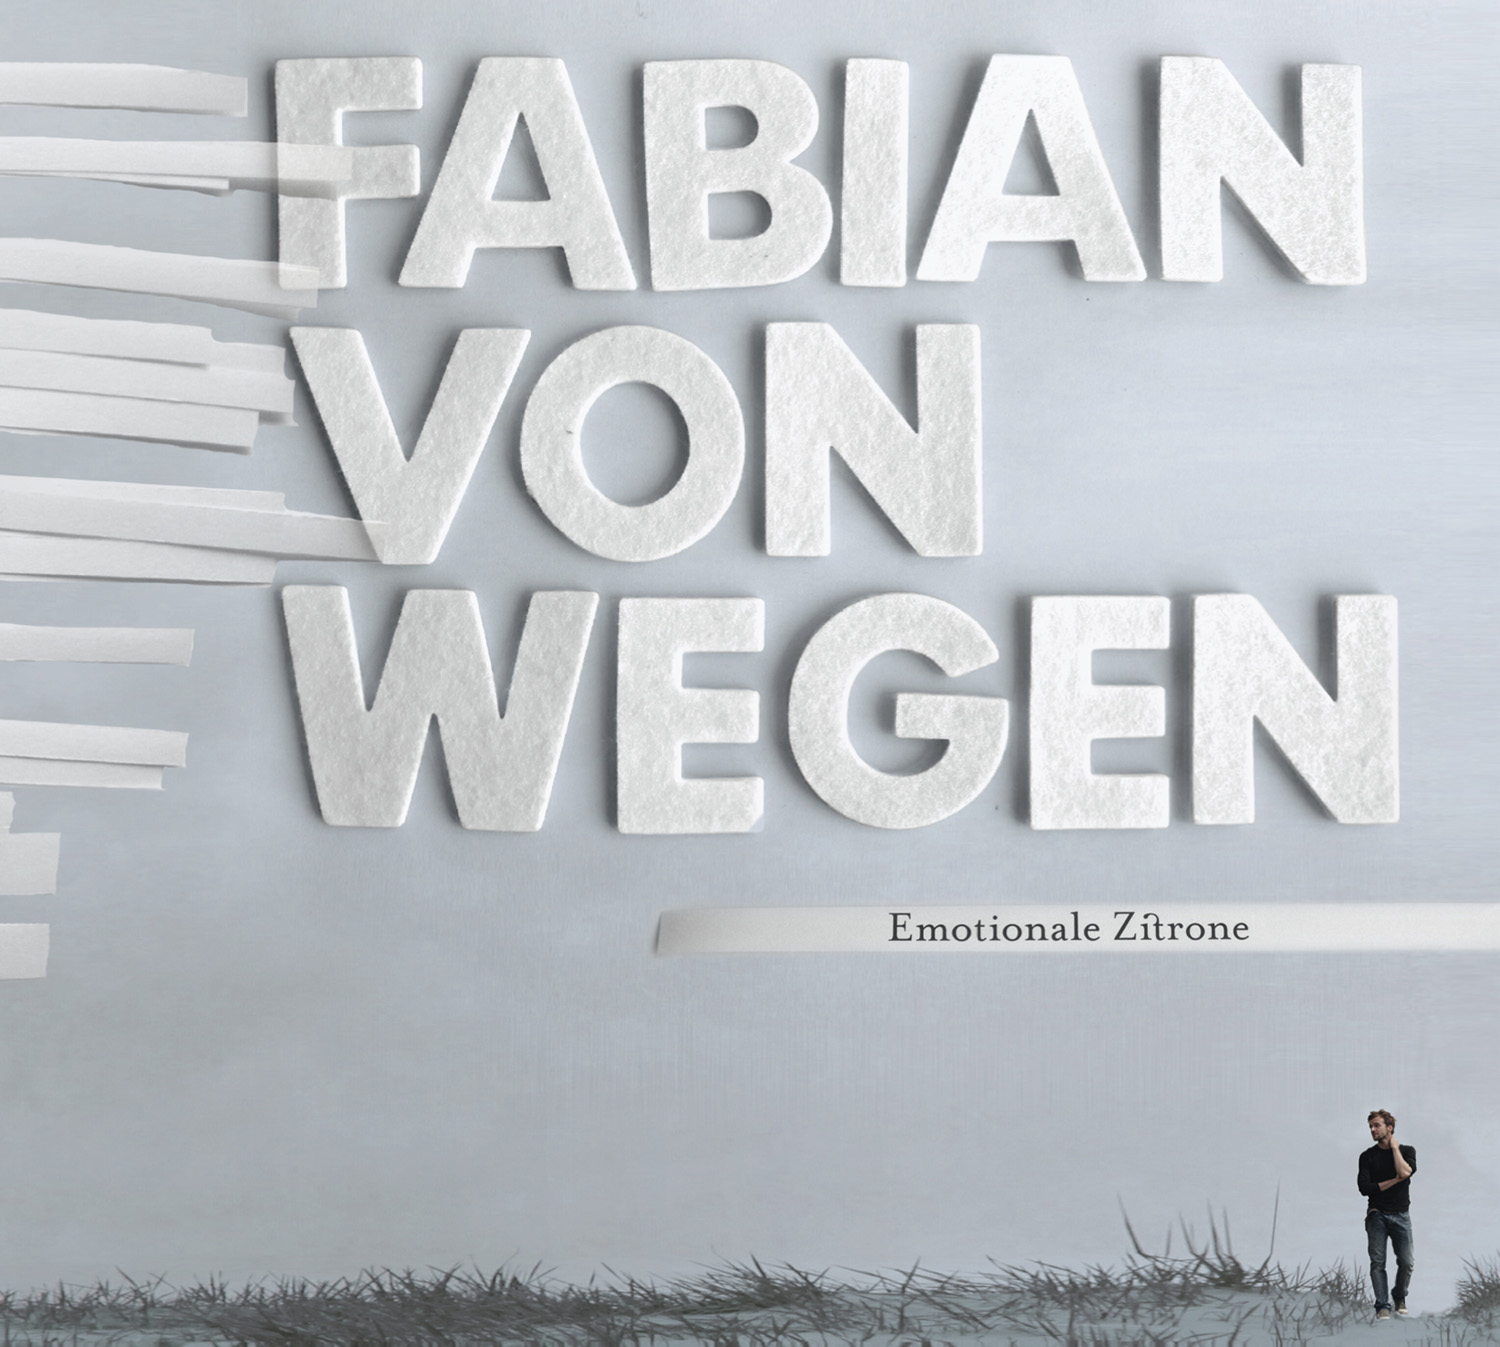 Fabian Von Wegen - "Emotionale Zitrone"